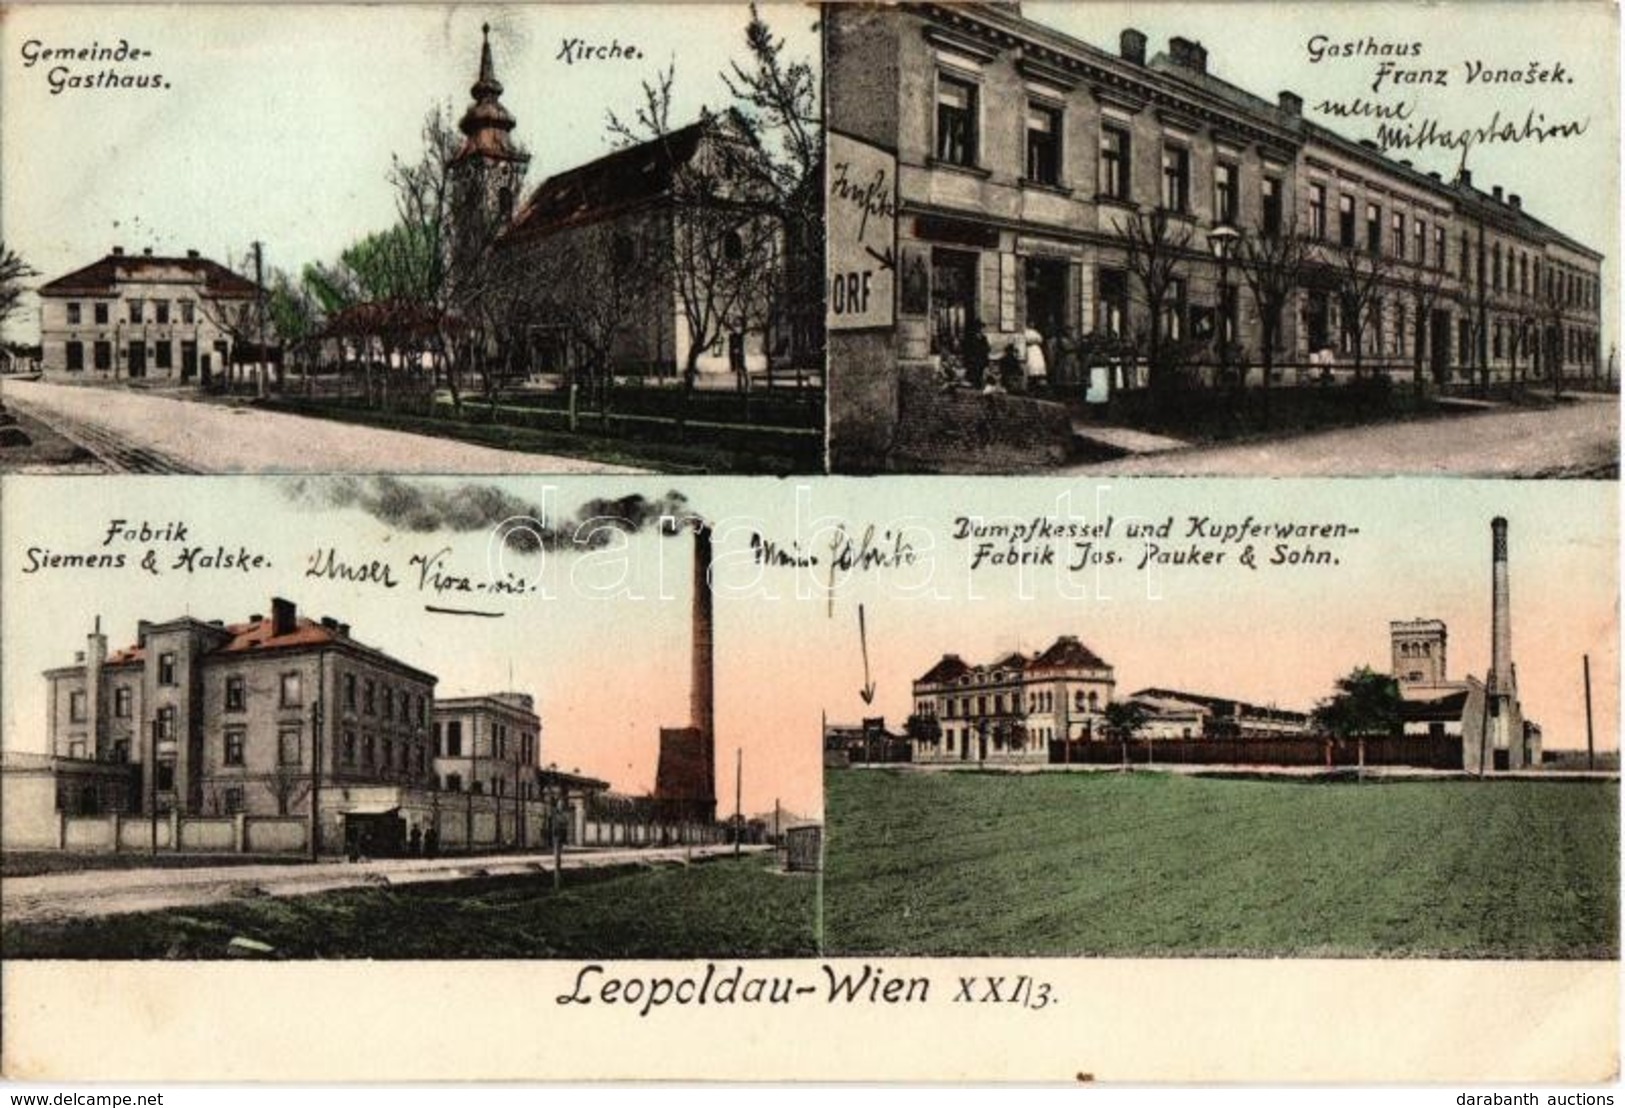 T2/T3 1911 Vienna, Wien XXI. Leopoldau, Gemeinde-Gasthaus, Kirche, Gasthaus Franz Vonasek, Fabrik Siemens & Halske, Damp - Ohne Zuordnung